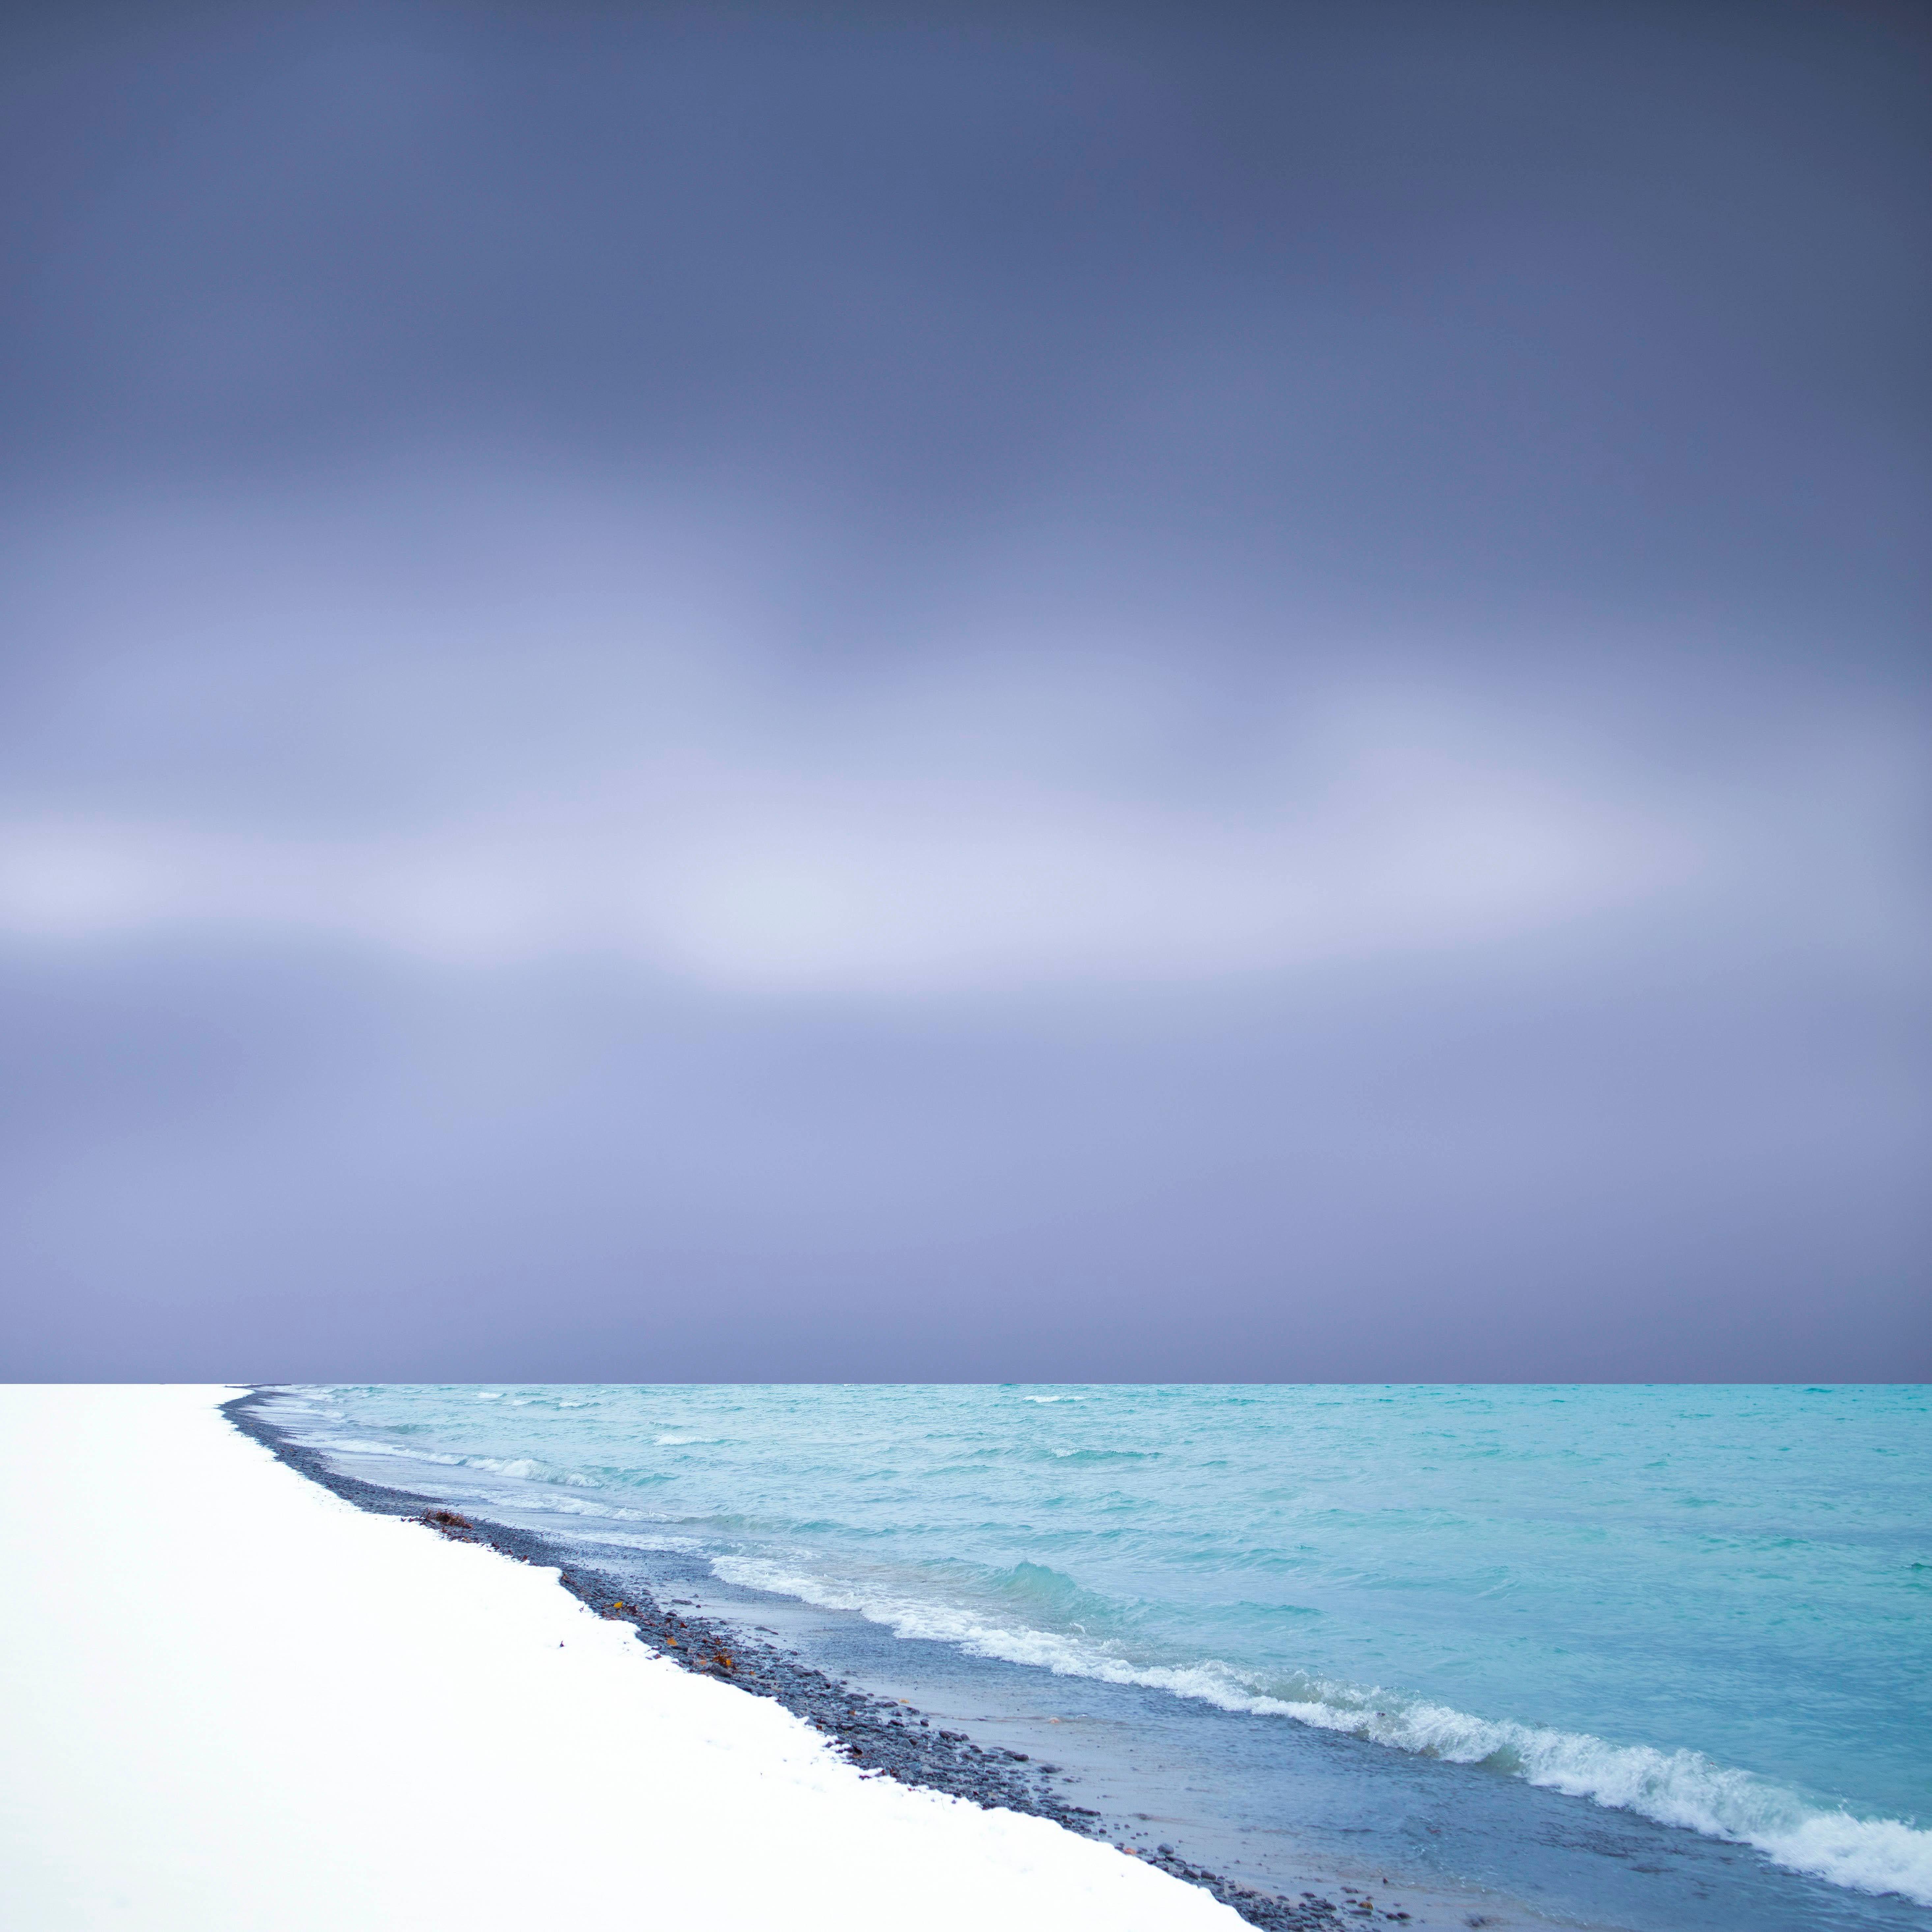 Lakeshore - Weiß, Blau, Strand, abstrakt, manipuliert, Fotografie auf Dibond